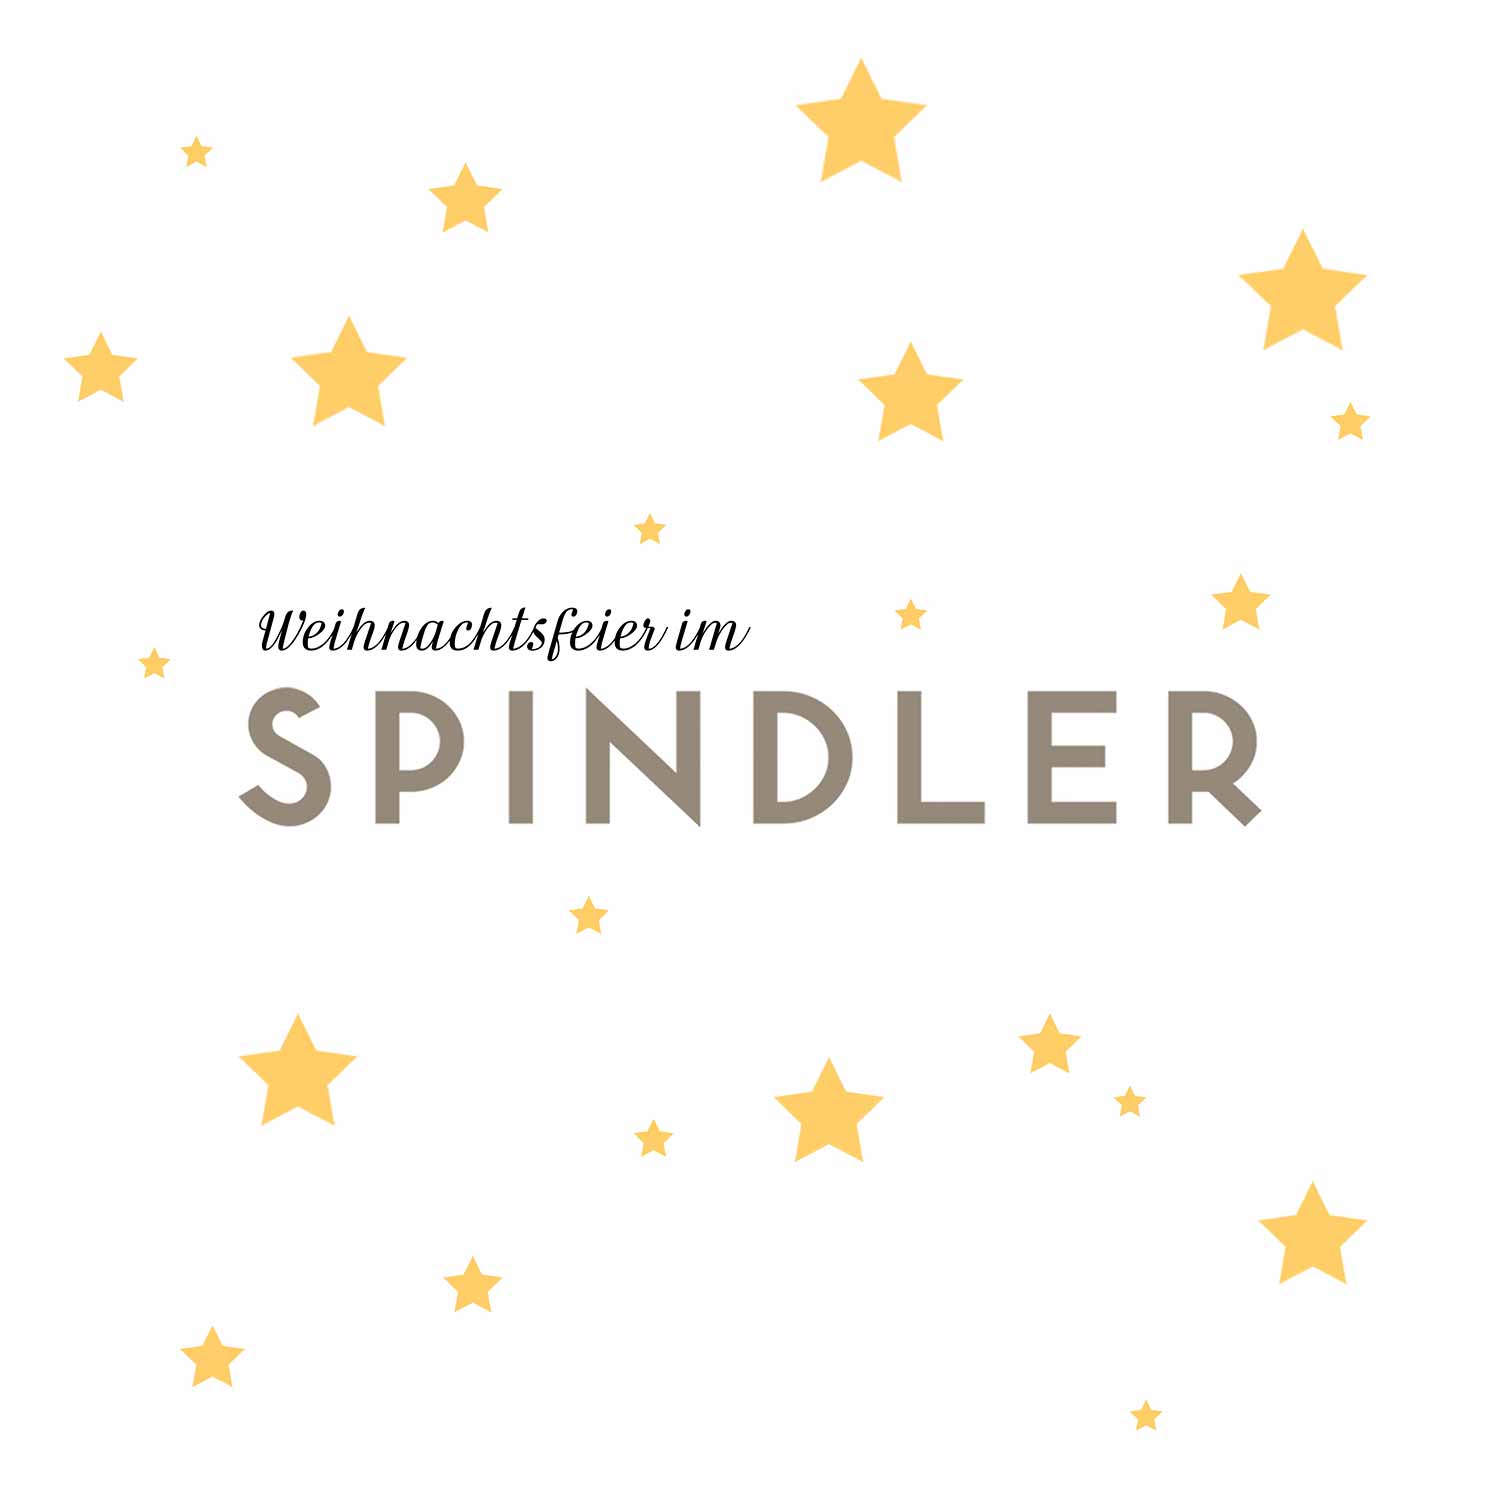 Spindler Weihnachtsfeier Berlin Logo